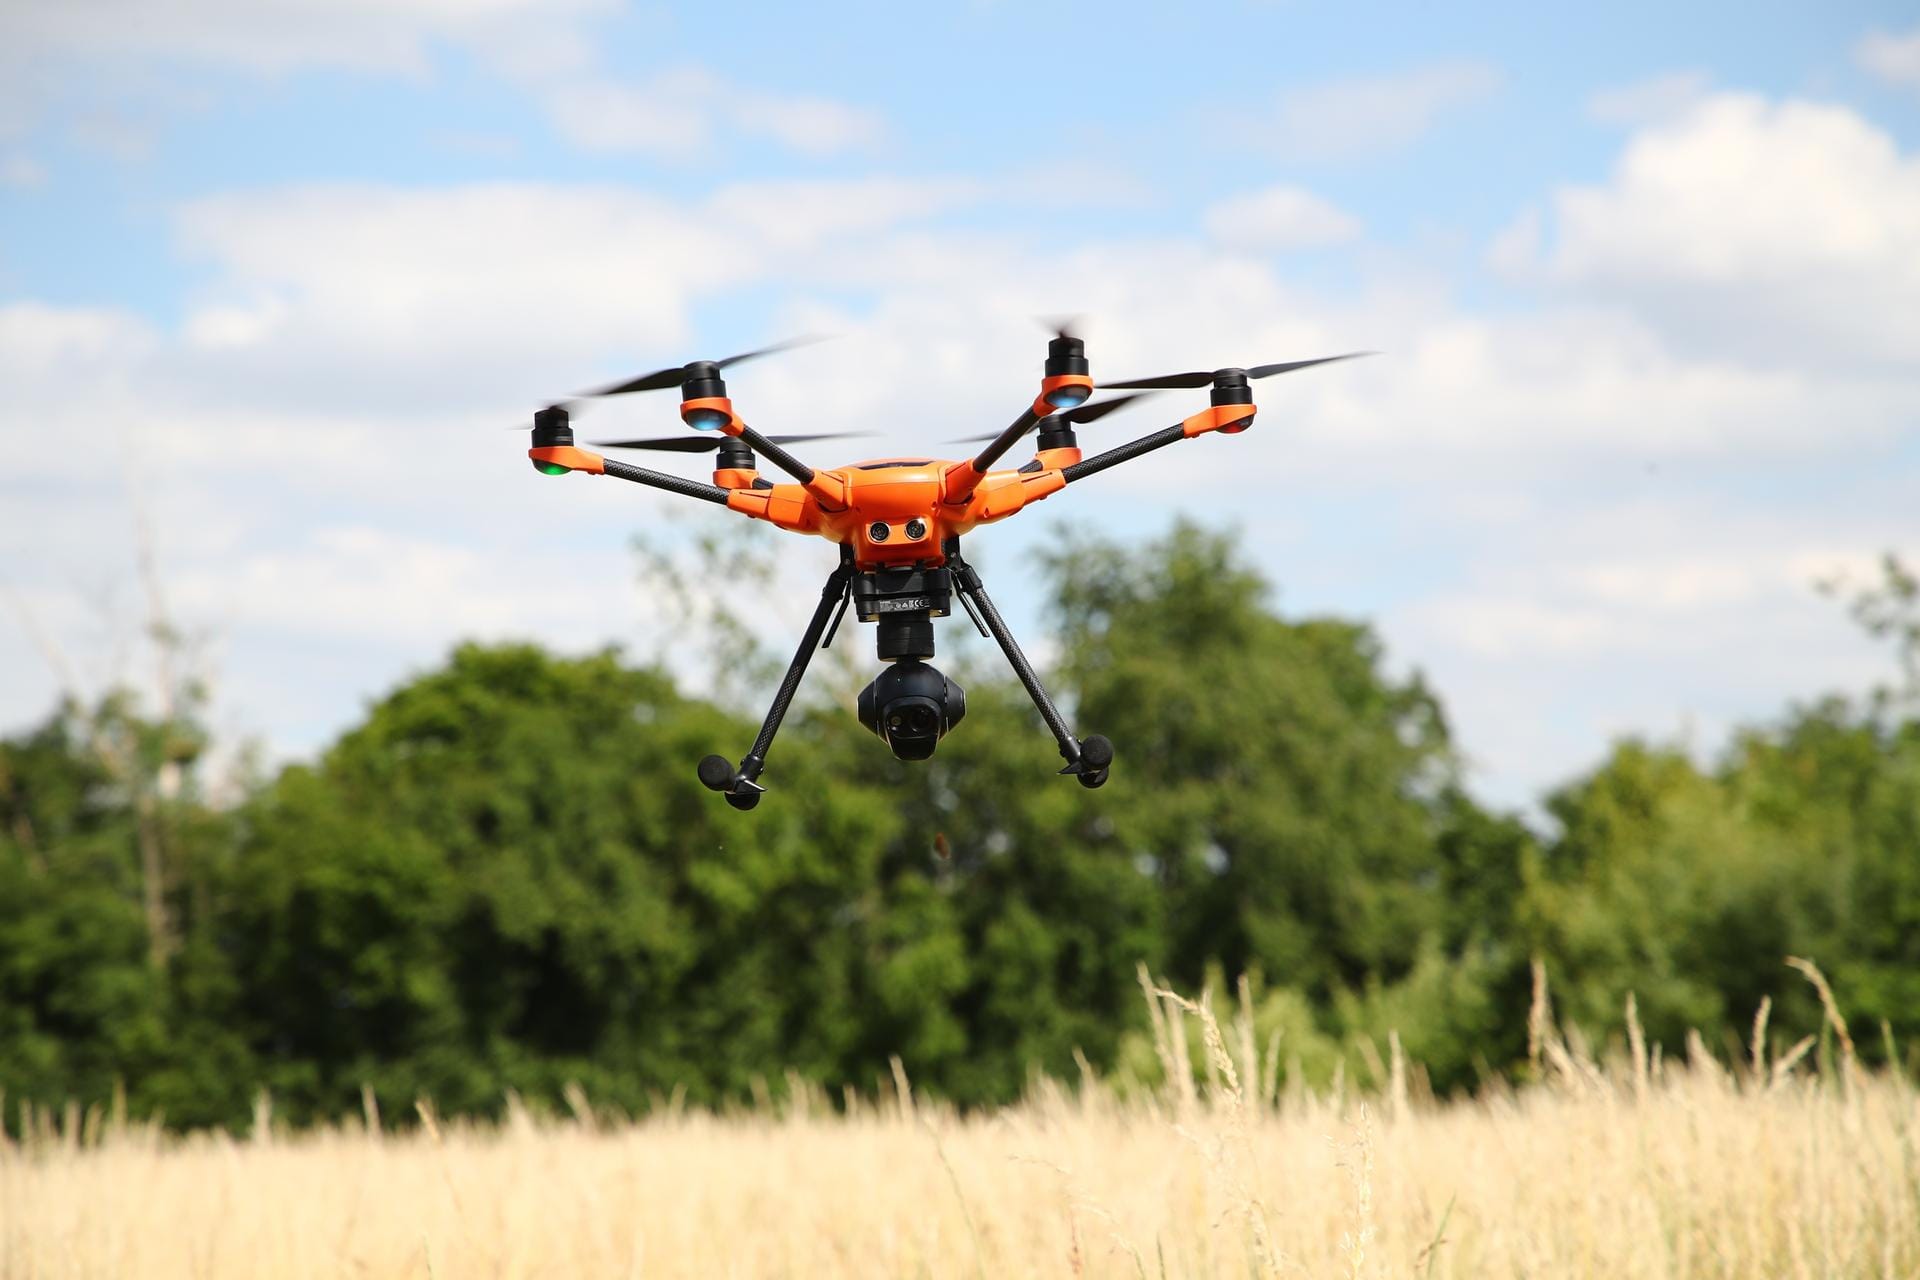 Die Drohne ist mit einer Wärmebildkamera ausgestattet. Jedes Jahr zur Ernte von Gras und Grünroggen im April und Mai werden tausende der noch hilflosen Rehkitze durch Mähmaschinen getötet oder verletzt.